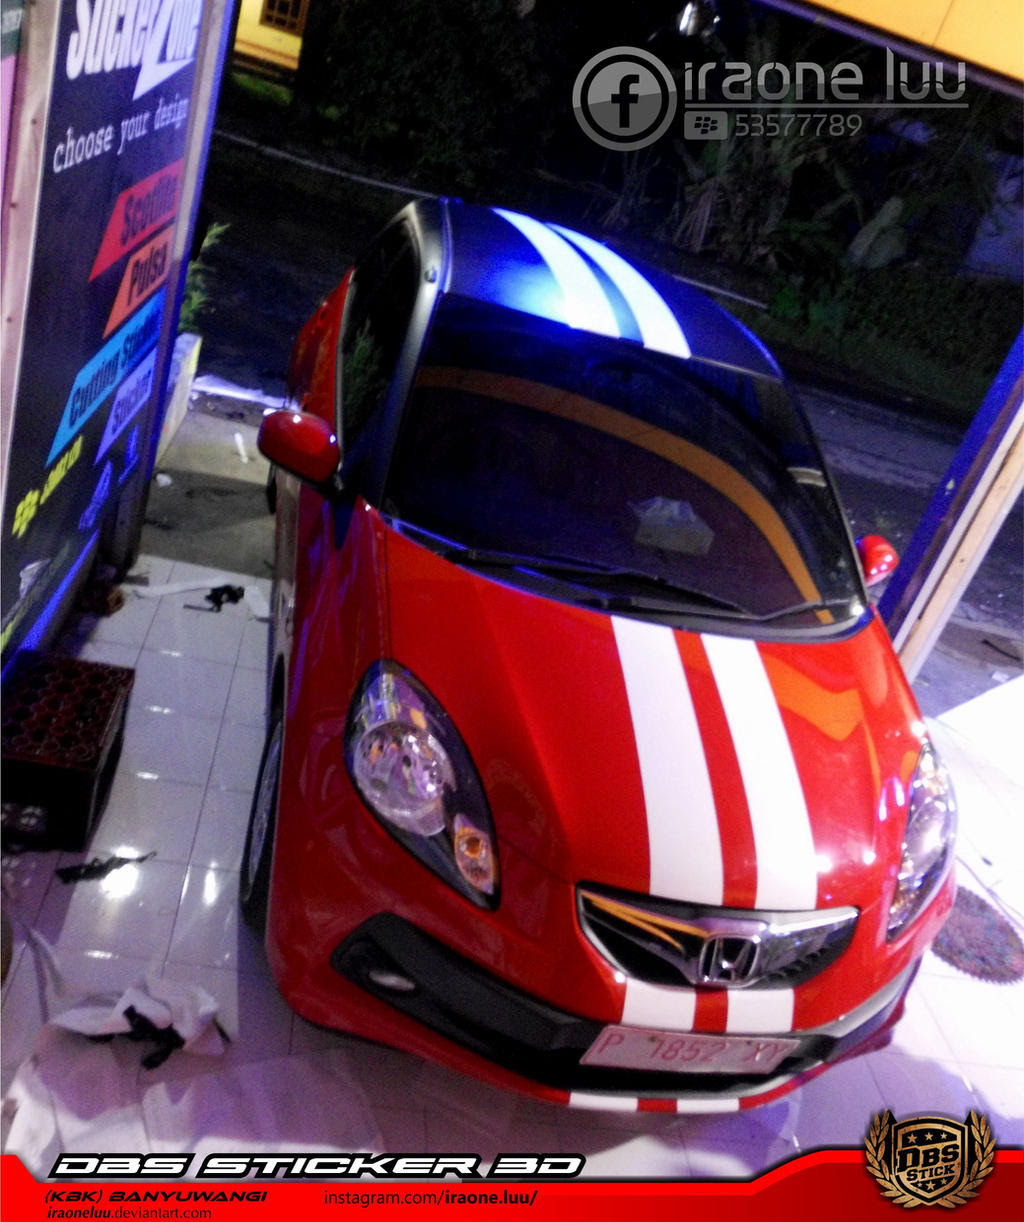 Galeri 57 Modifikasi Honda Brio Cutting Sticker Terupdate Togog Modif